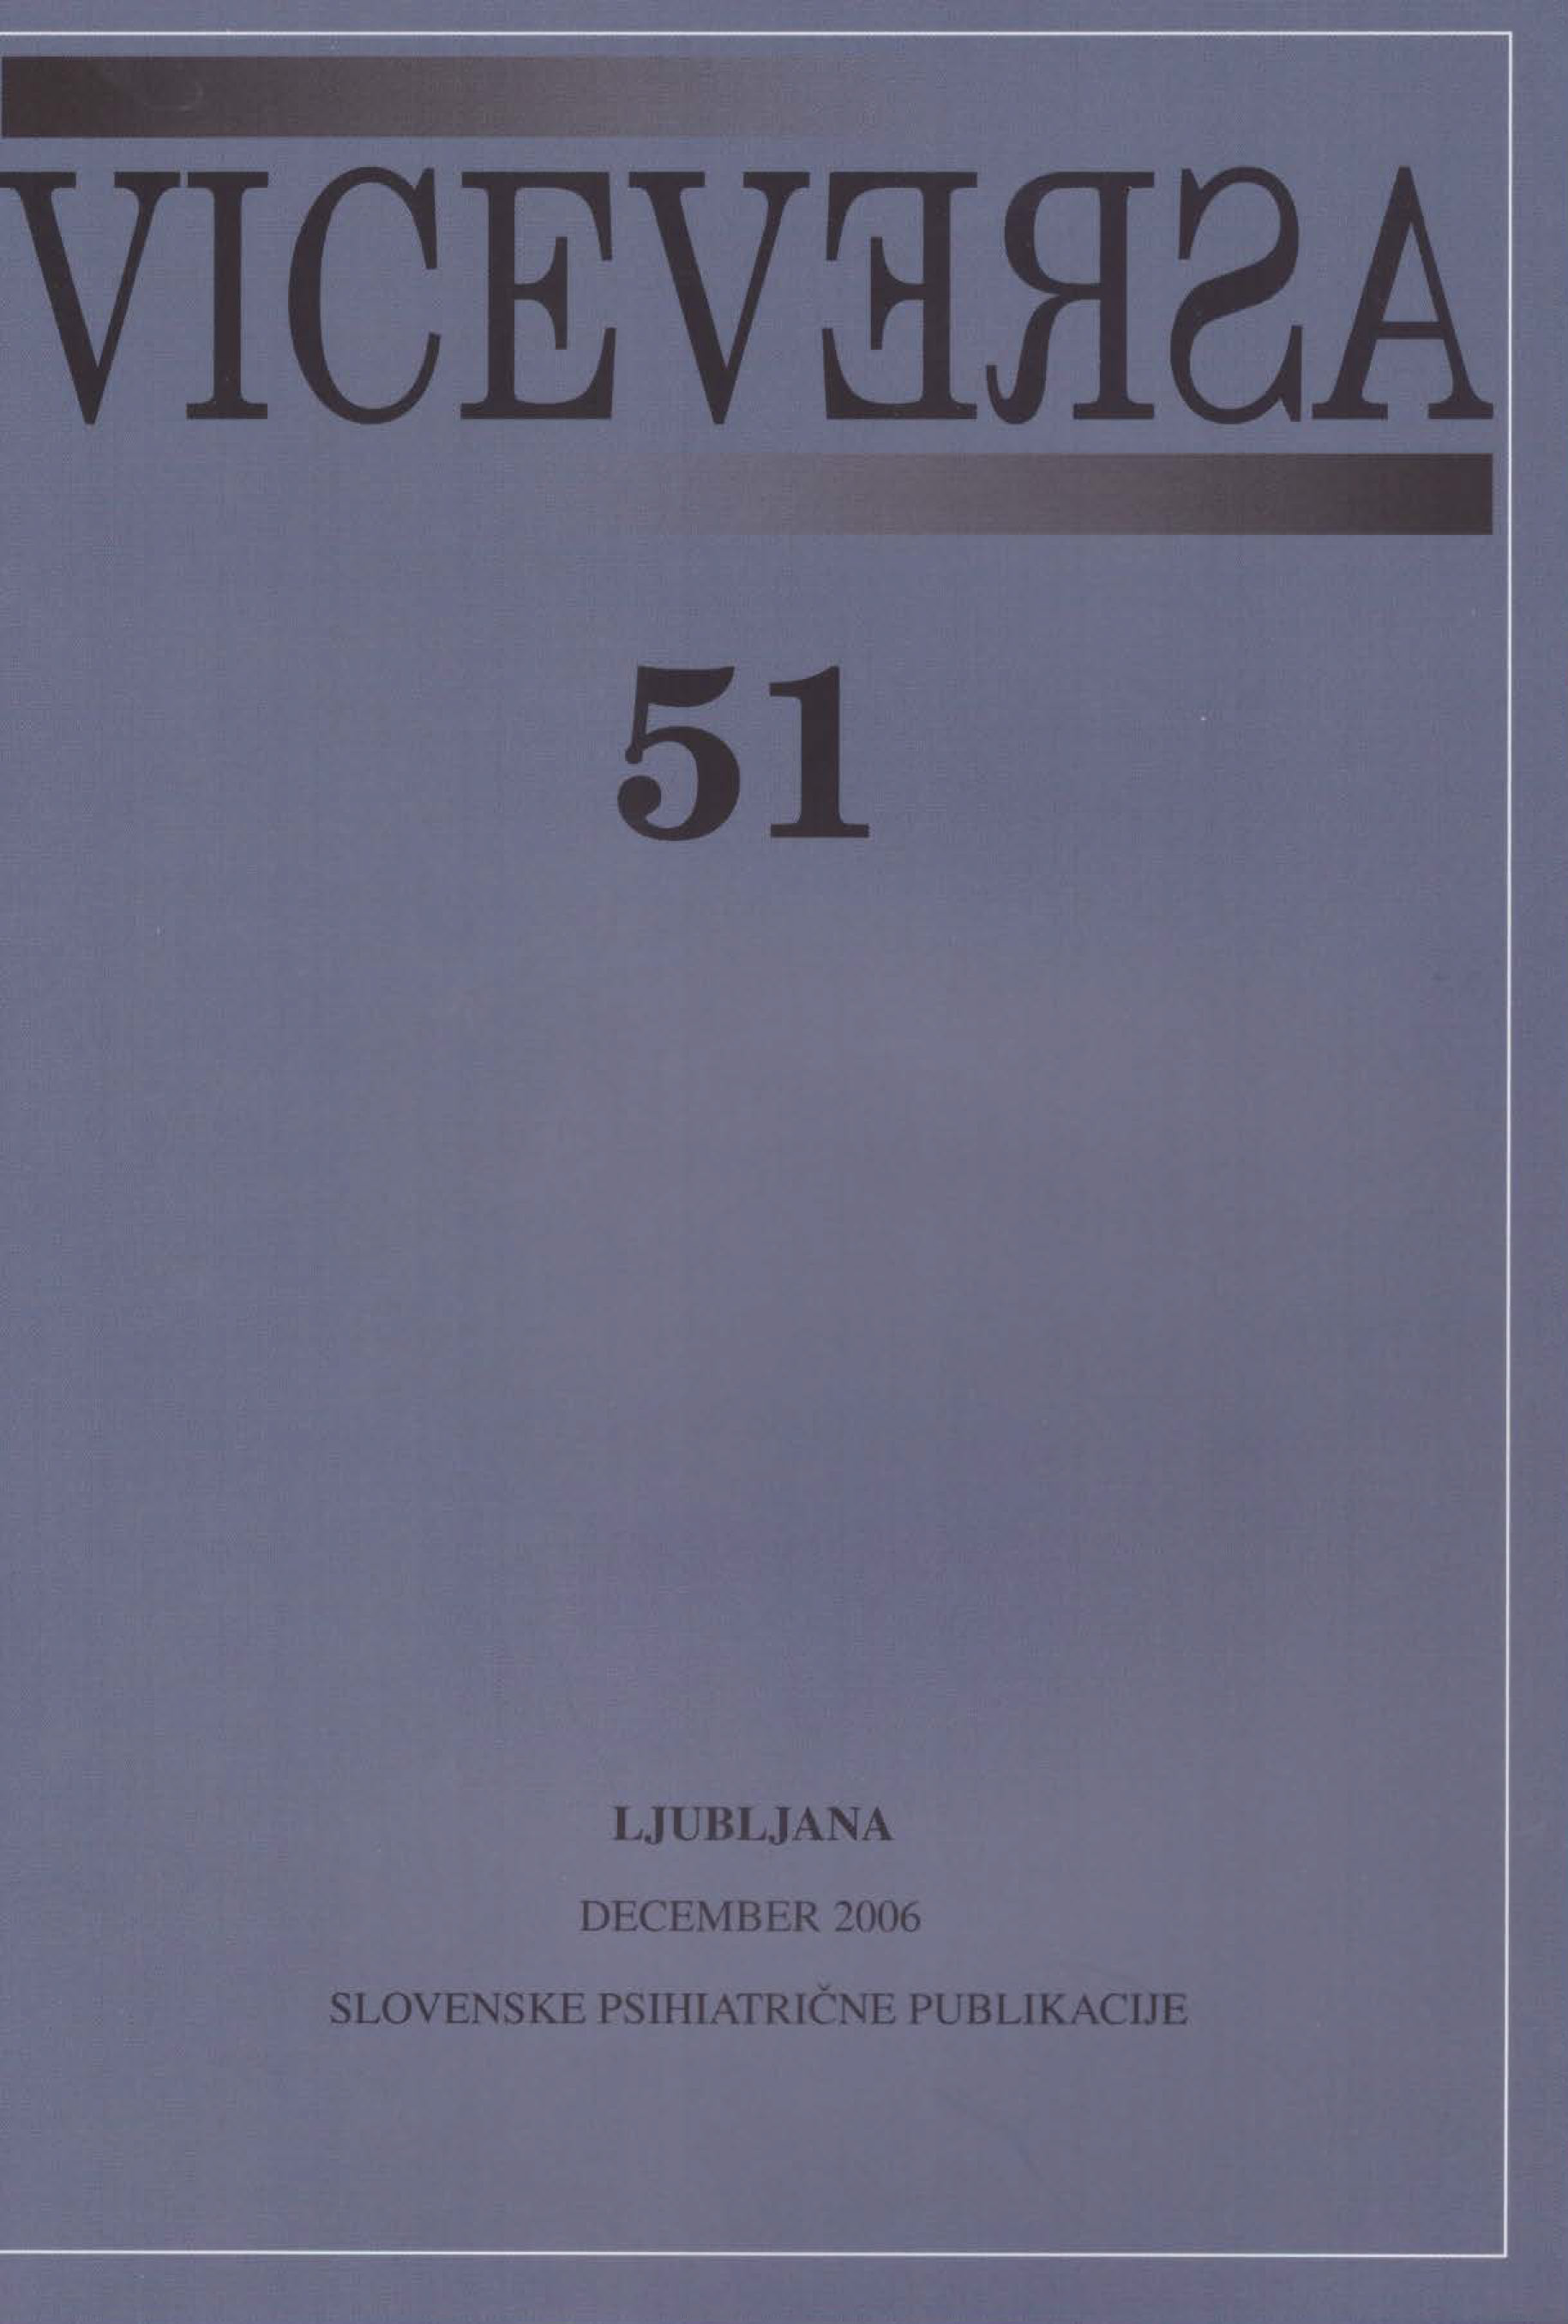 					Poglej Letn. 15 Št. 51 (2006): VICEVERSA
				